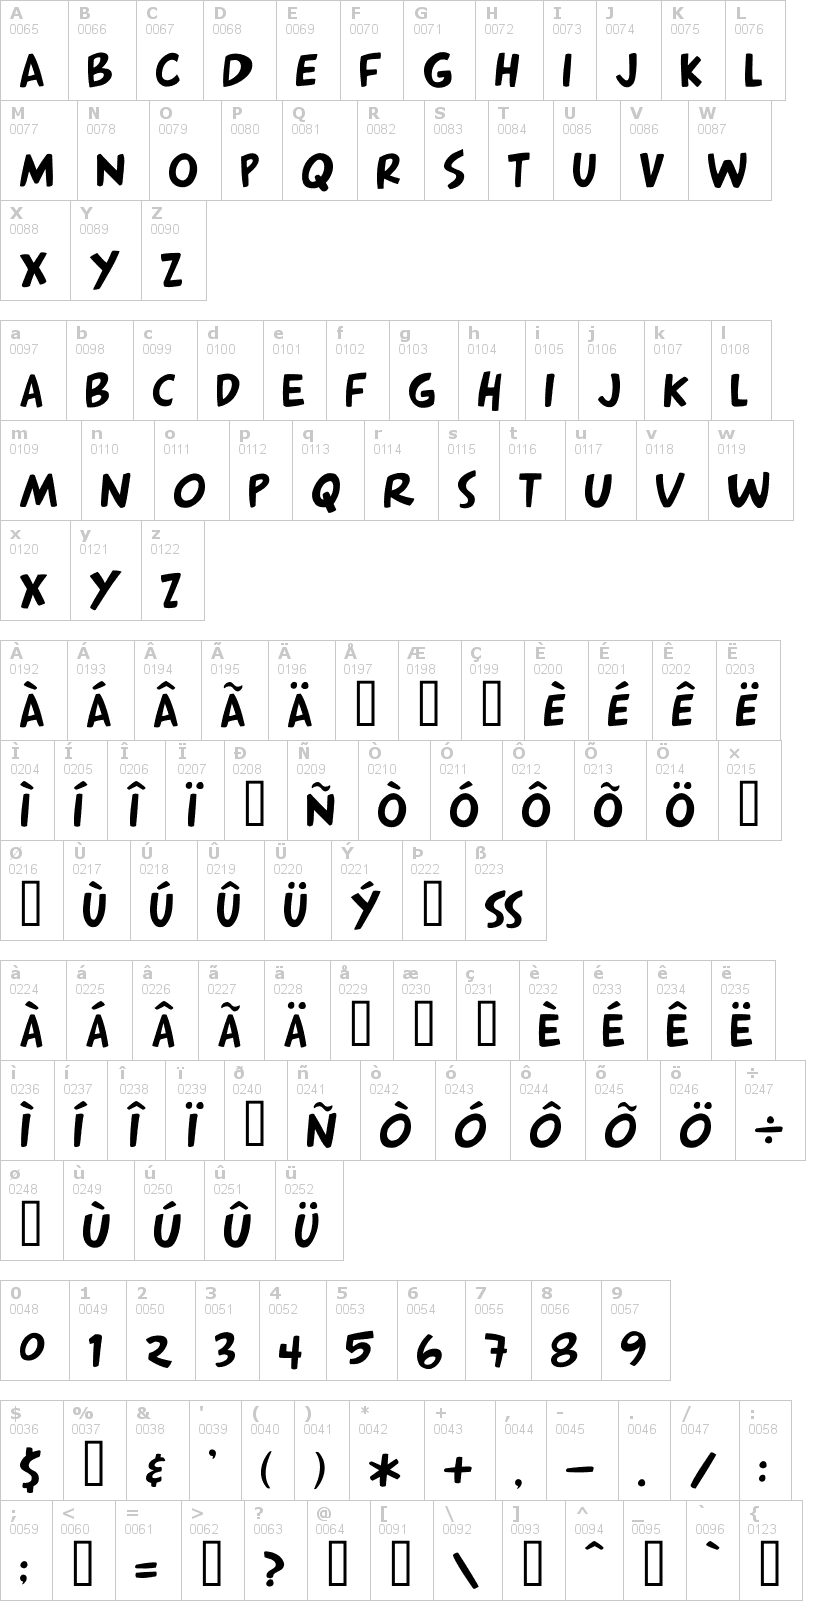 Lettere dell'alfabeto del font hey-arnold con le quali è possibile realizzare adesivi prespaziati